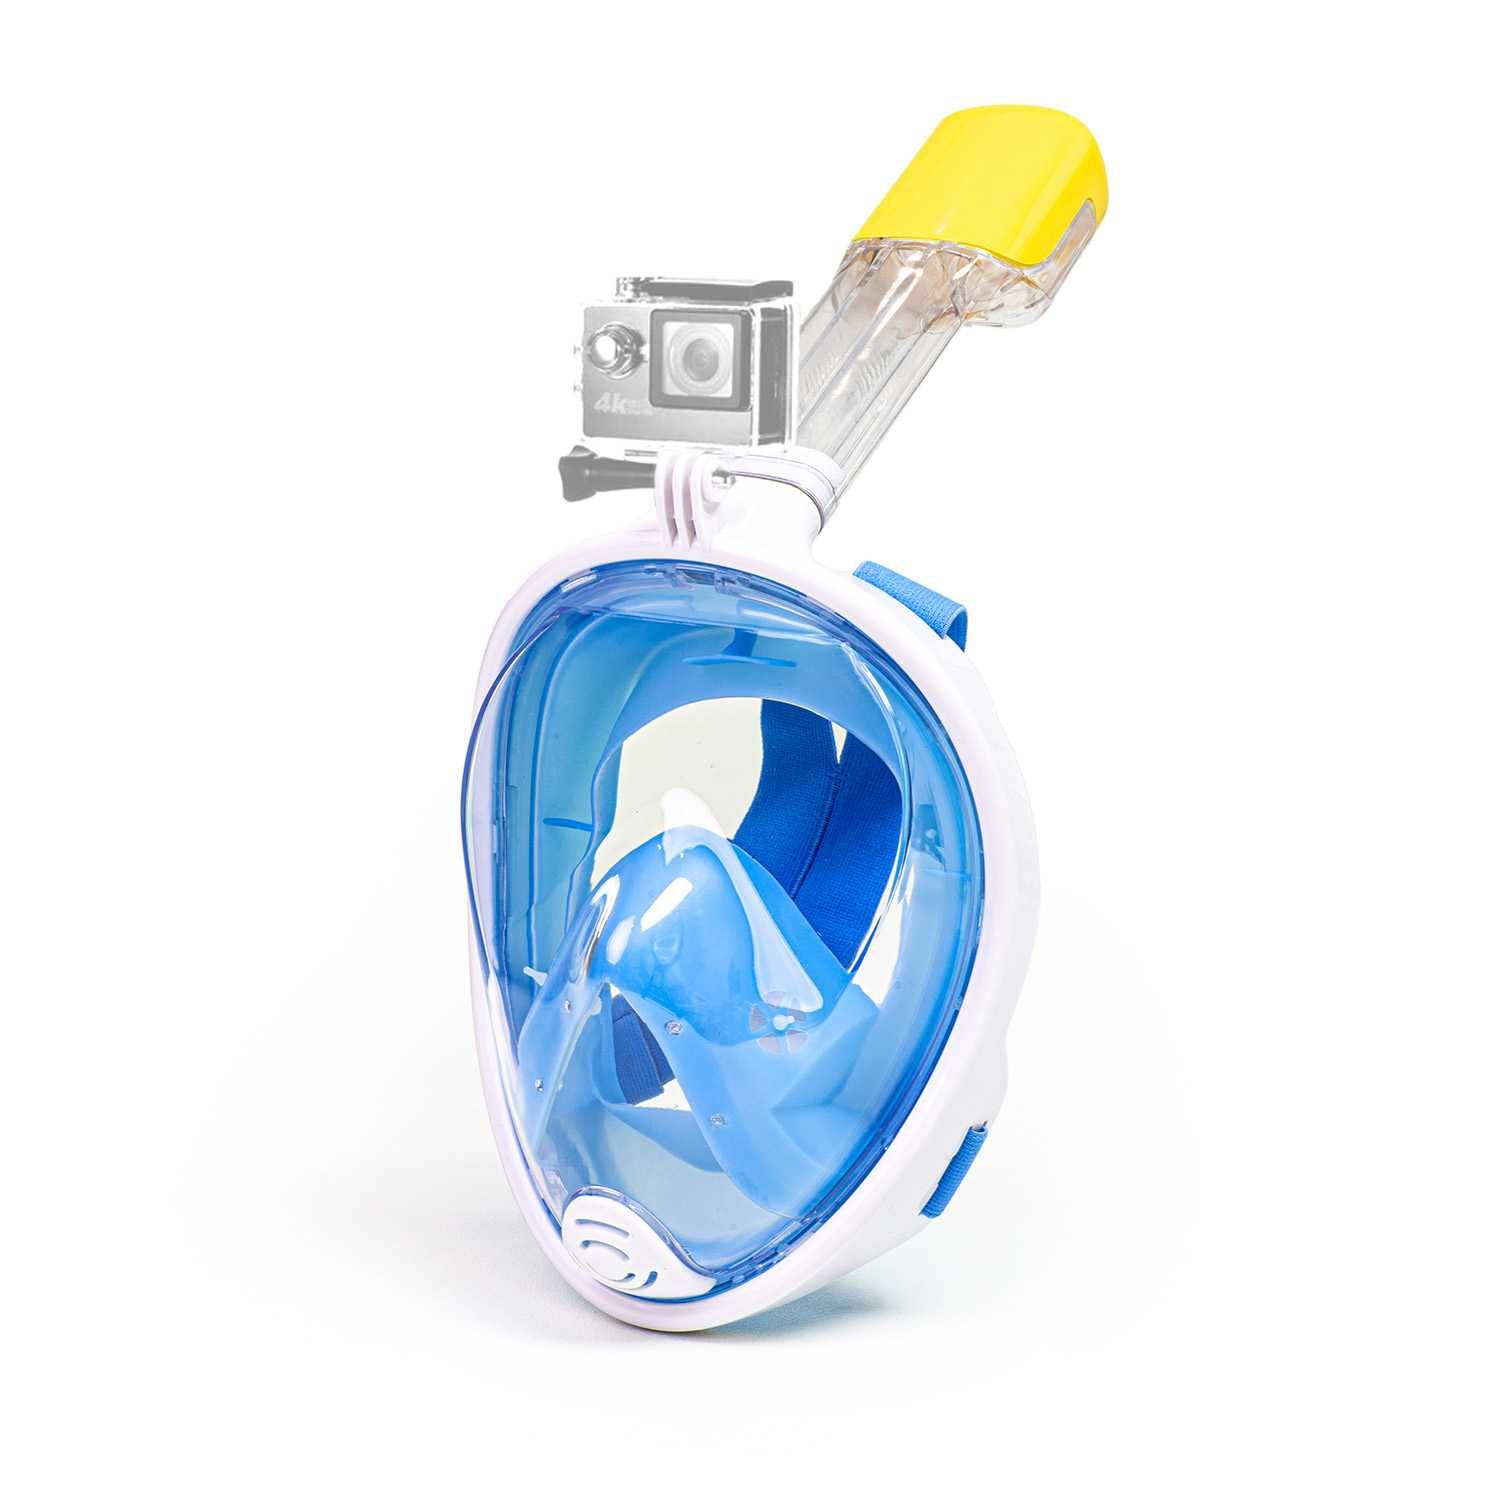 Maska do nurkowania snorkelingu dla dzieci S/M (1 rurka) niebieska